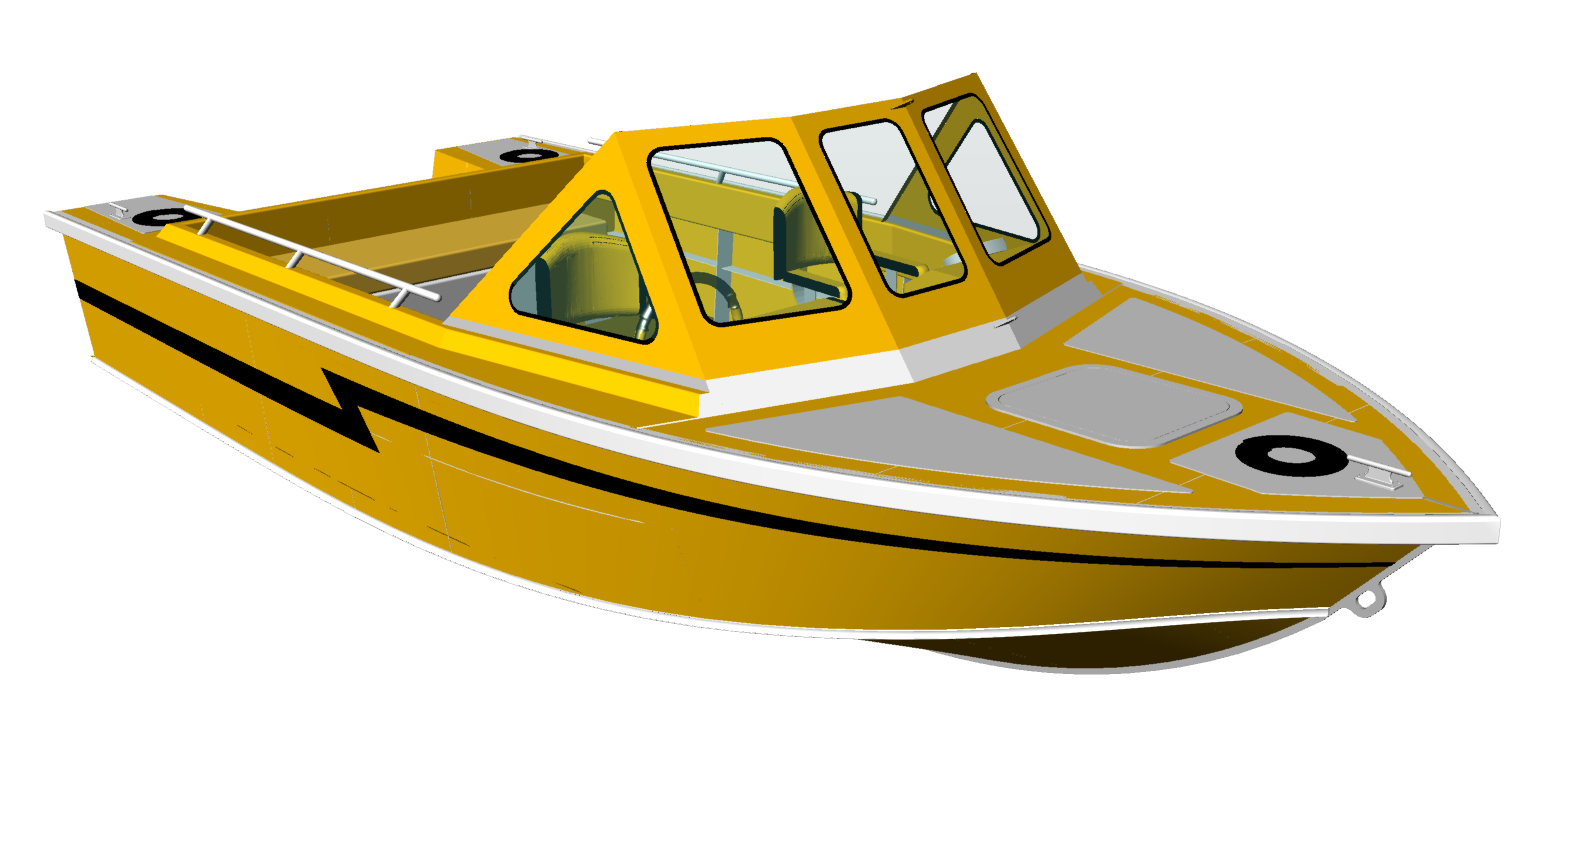 Лодка картинка для детей на прозрачном фоне. Катер для детей. Катер на прозрачном фоне. Моторная лодка для детей. Моторная лодка без фона.